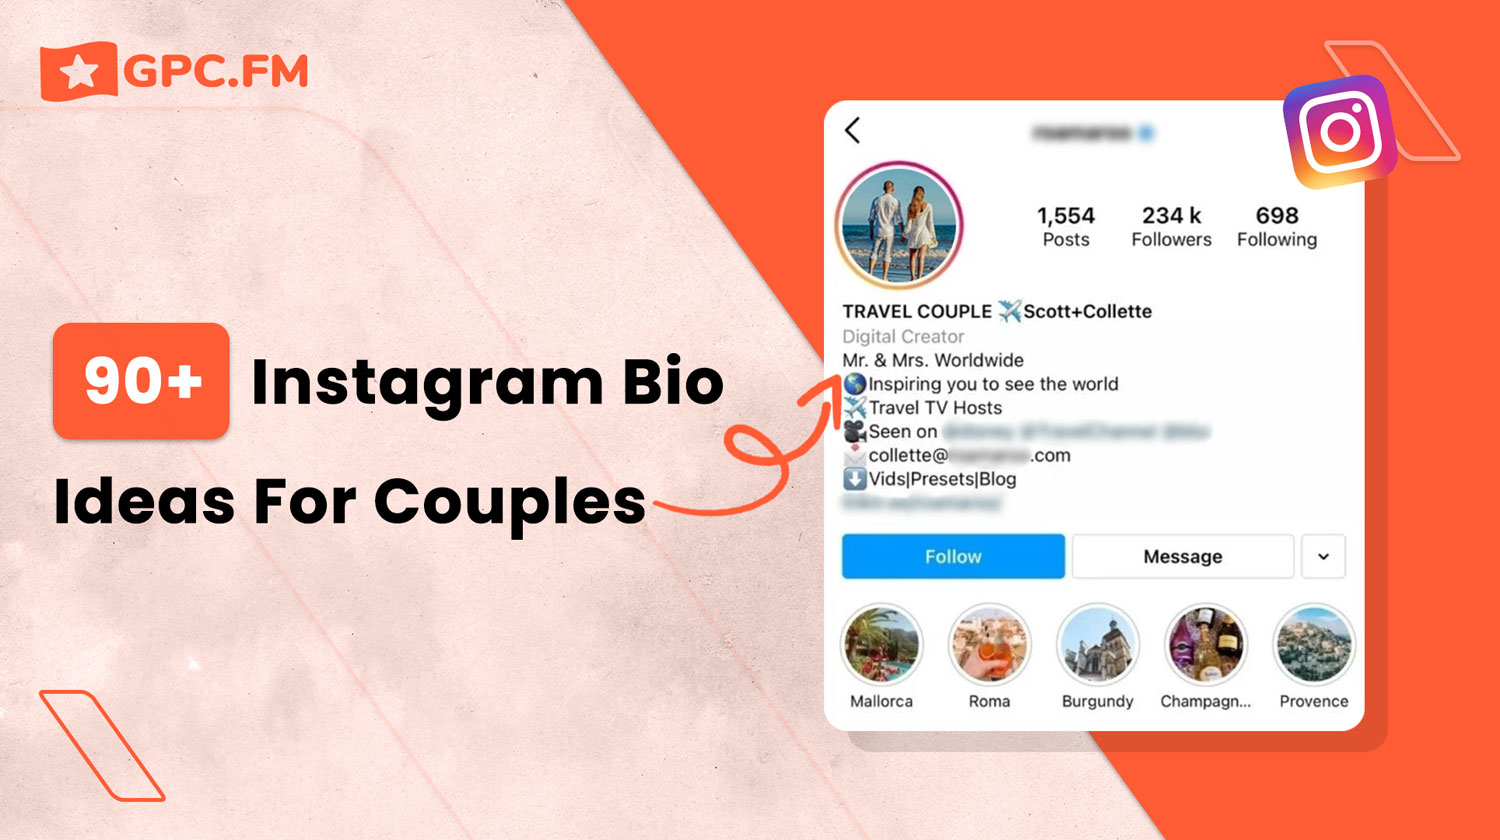 90+ Instagram Bio Ideas For Couples |GPC.fm